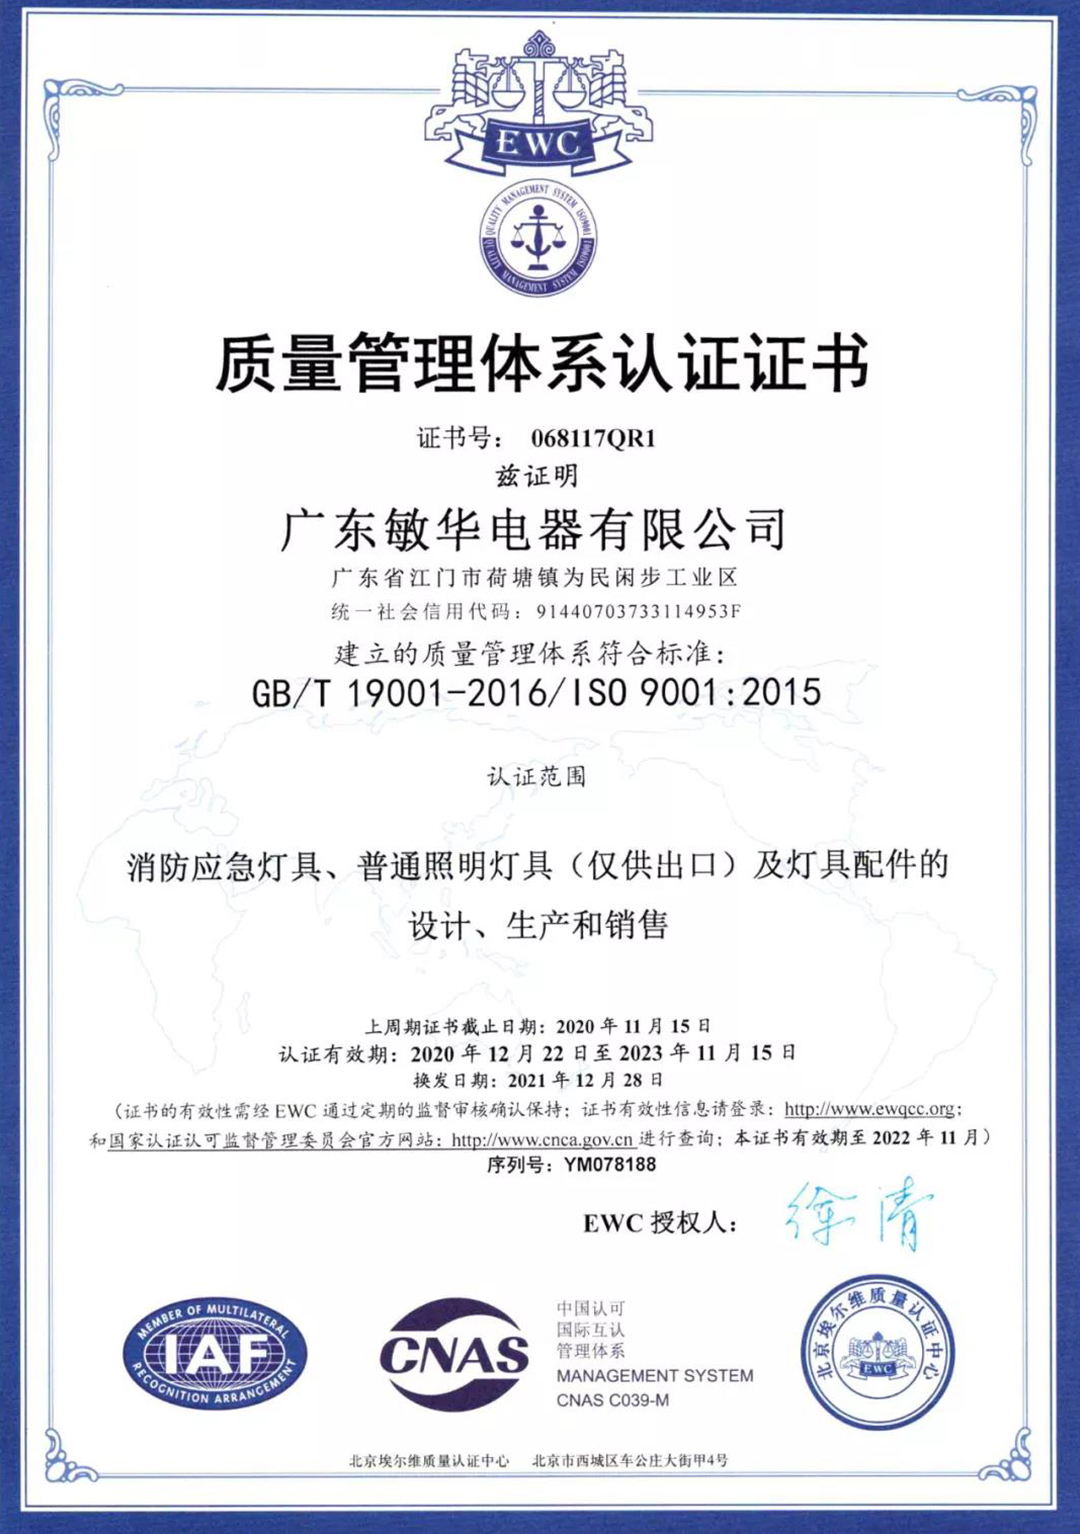 敏华连续十四年顺利通过ISO国际管理体系认证！